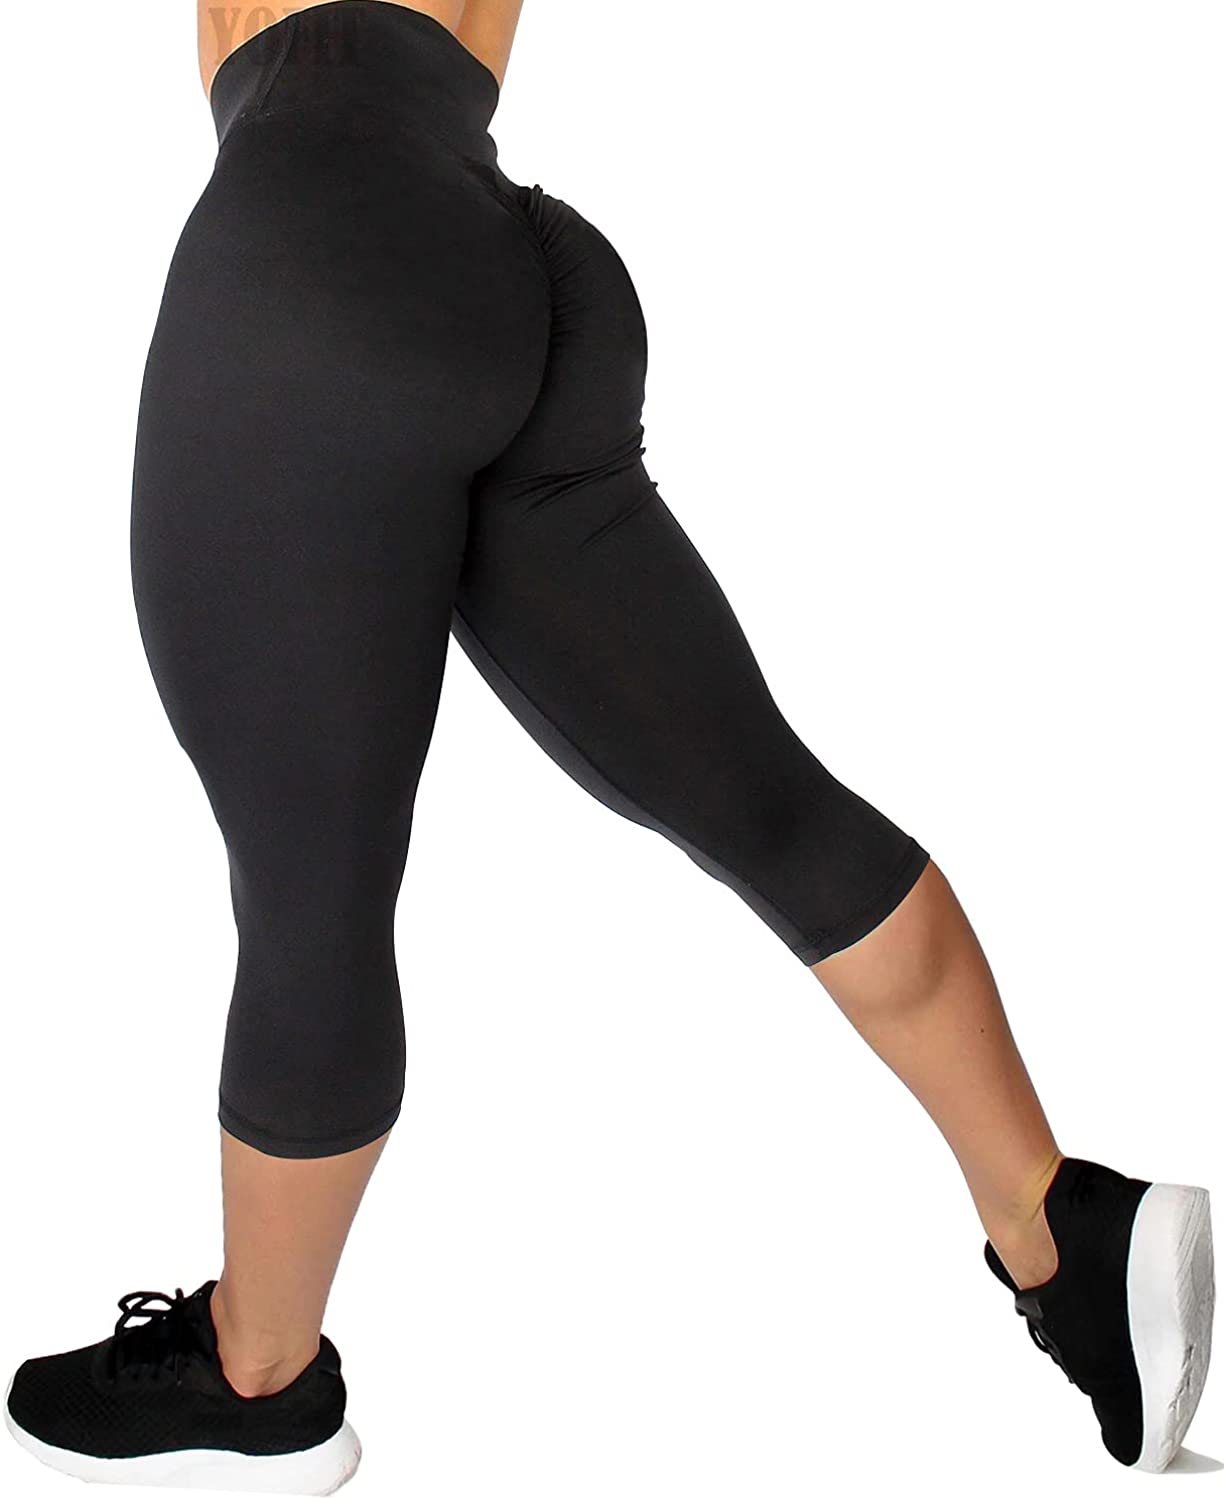 Hvyesh Women's Capri Leggings Workout Yoga Running Capris High